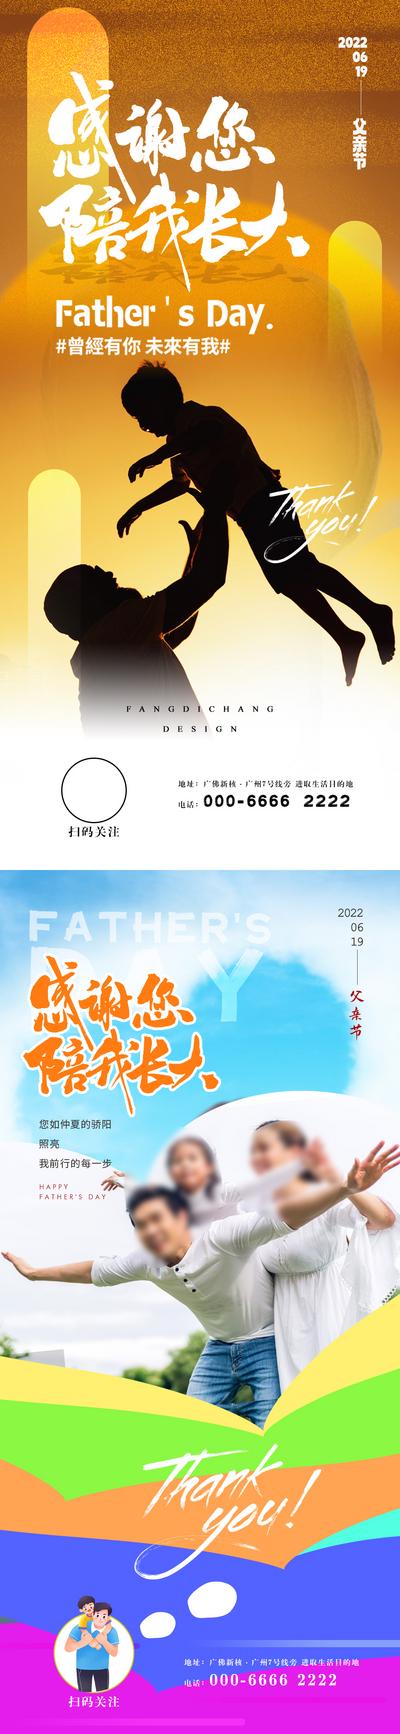 南门网 父亲节海报系列